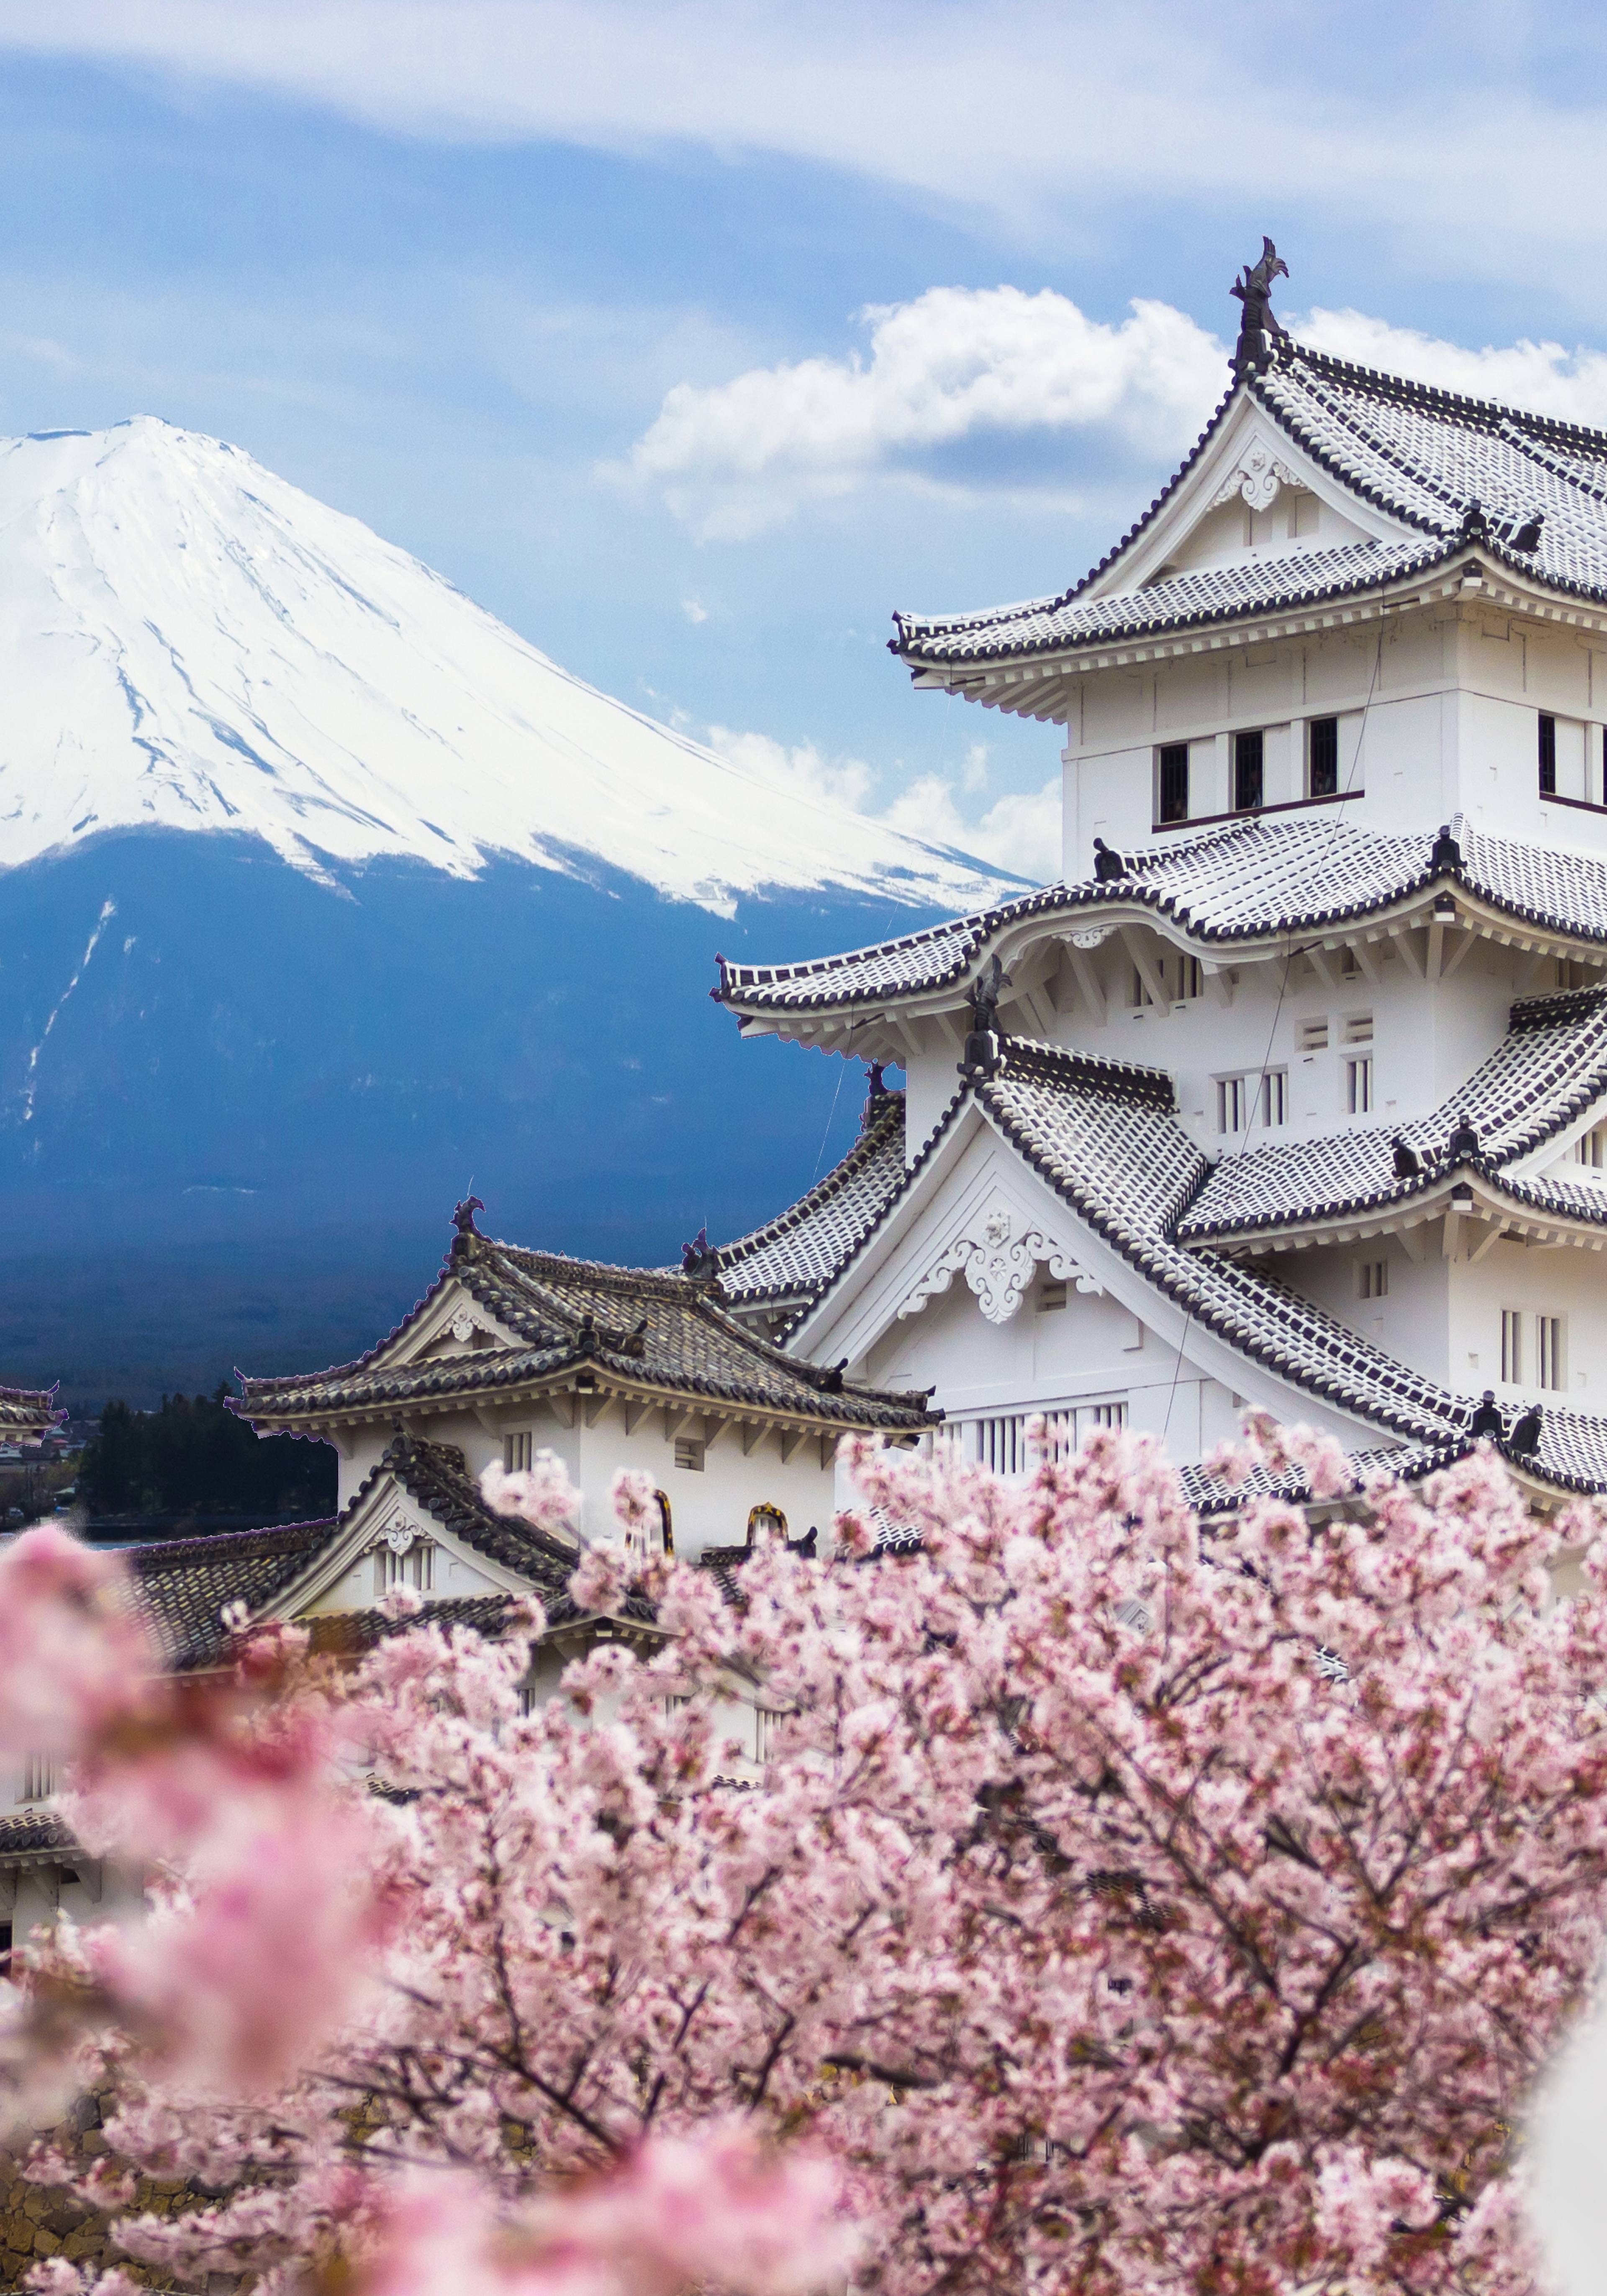 castello con monte fuji sullo sfondo e fiori di ciliegio rosa